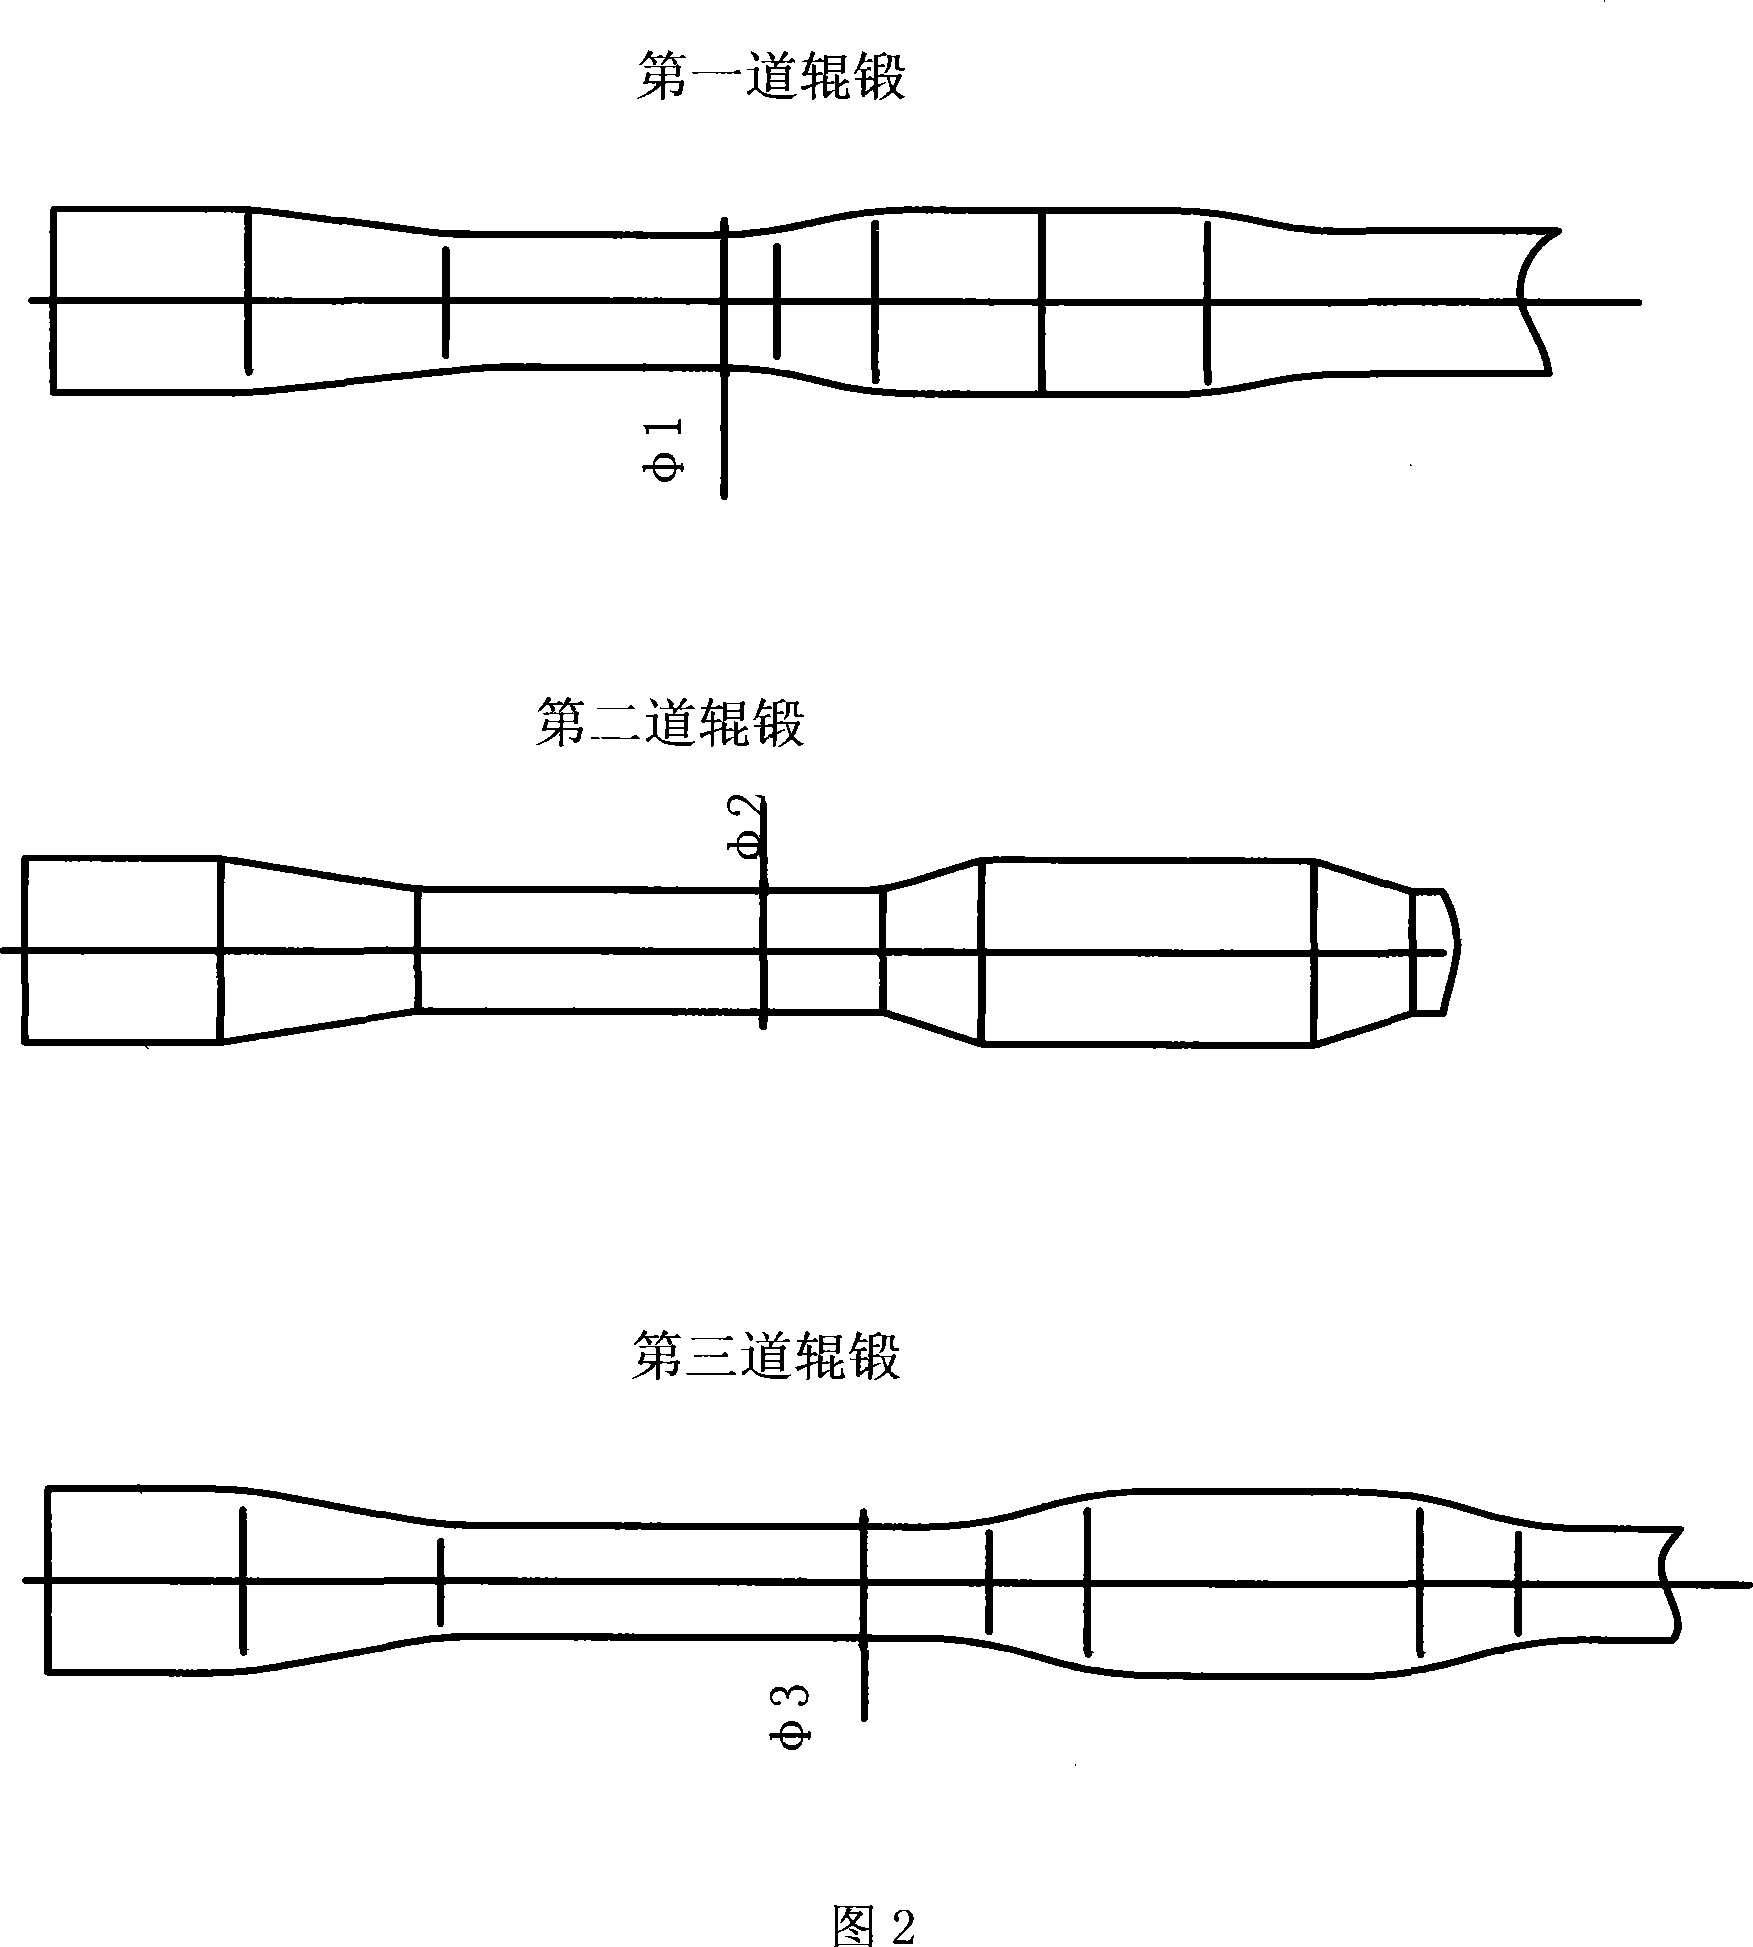 Method of preparing coupler yoke frame